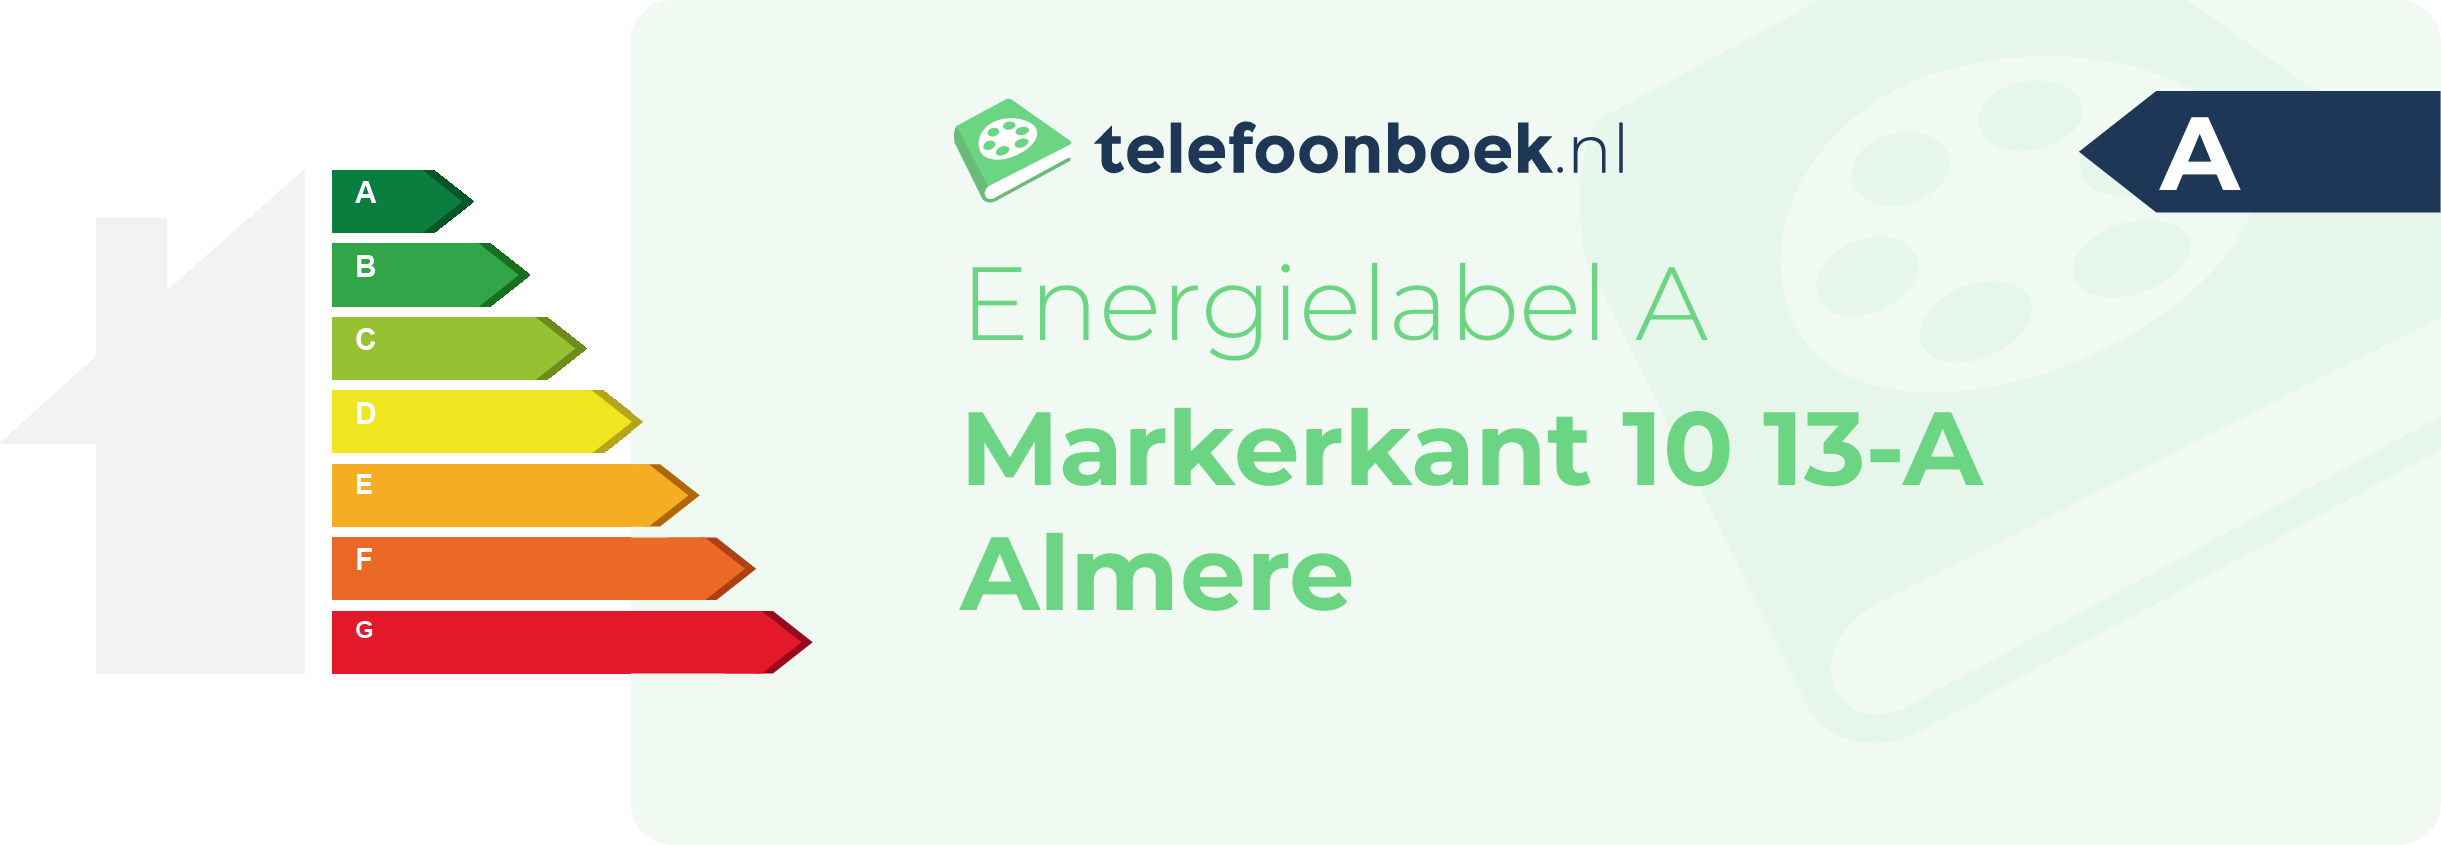 Energielabel Markerkant 10 13-A Almere